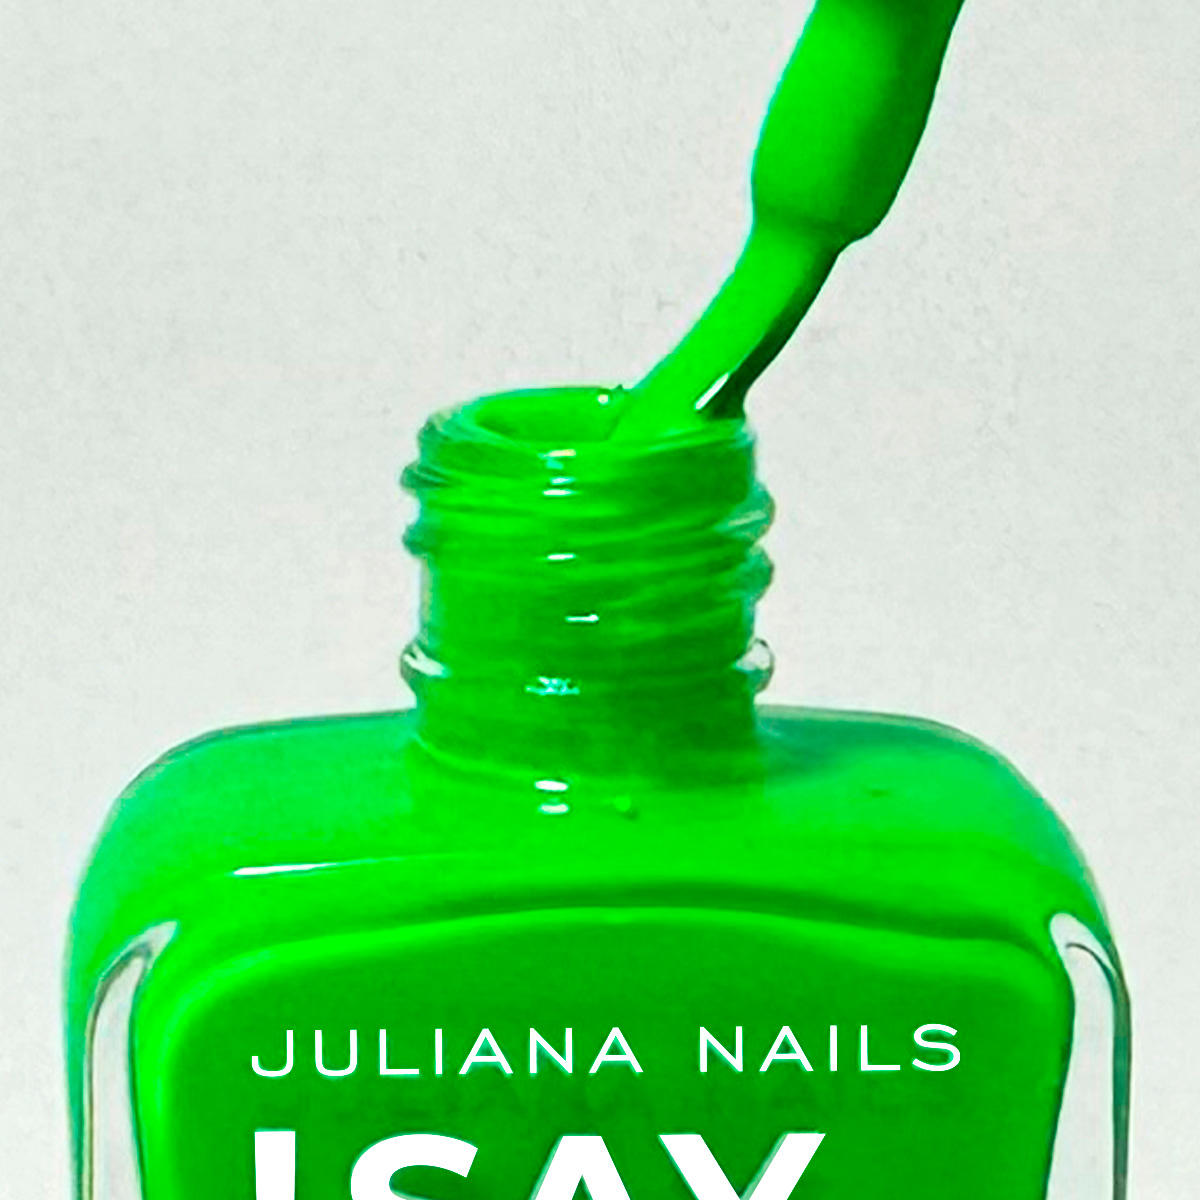 Juliana Nails Say Stay! Nail Polish Neon Hashtag Green 10 ml - 4